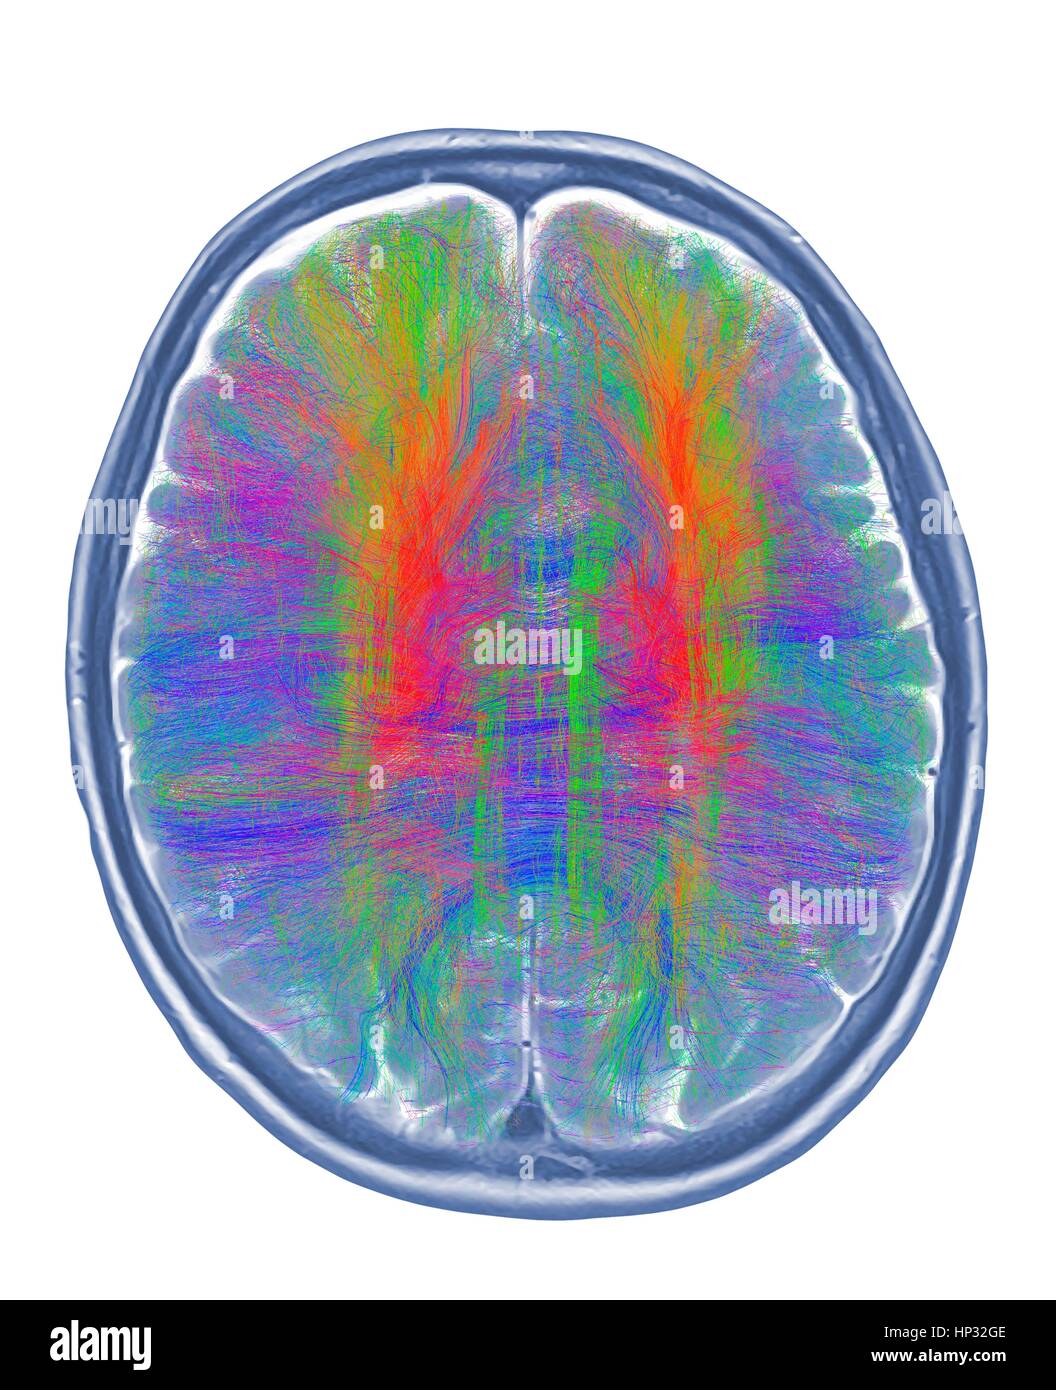 Computer artwork di mri vista superiore del cervello che mostra la sostanza bianca fibre colorate.3D di diffusione di imaging spettrale (DSI) scansione di fasci di sostanza bianca in fibre di nervo nel cervello.Le fibre la trasmissione dei segnali nervosi tra le regioni del cervello tra cervello midollo spinale.lo spettro di diffusione di imaging (DSI) è una variante del Foto Stock